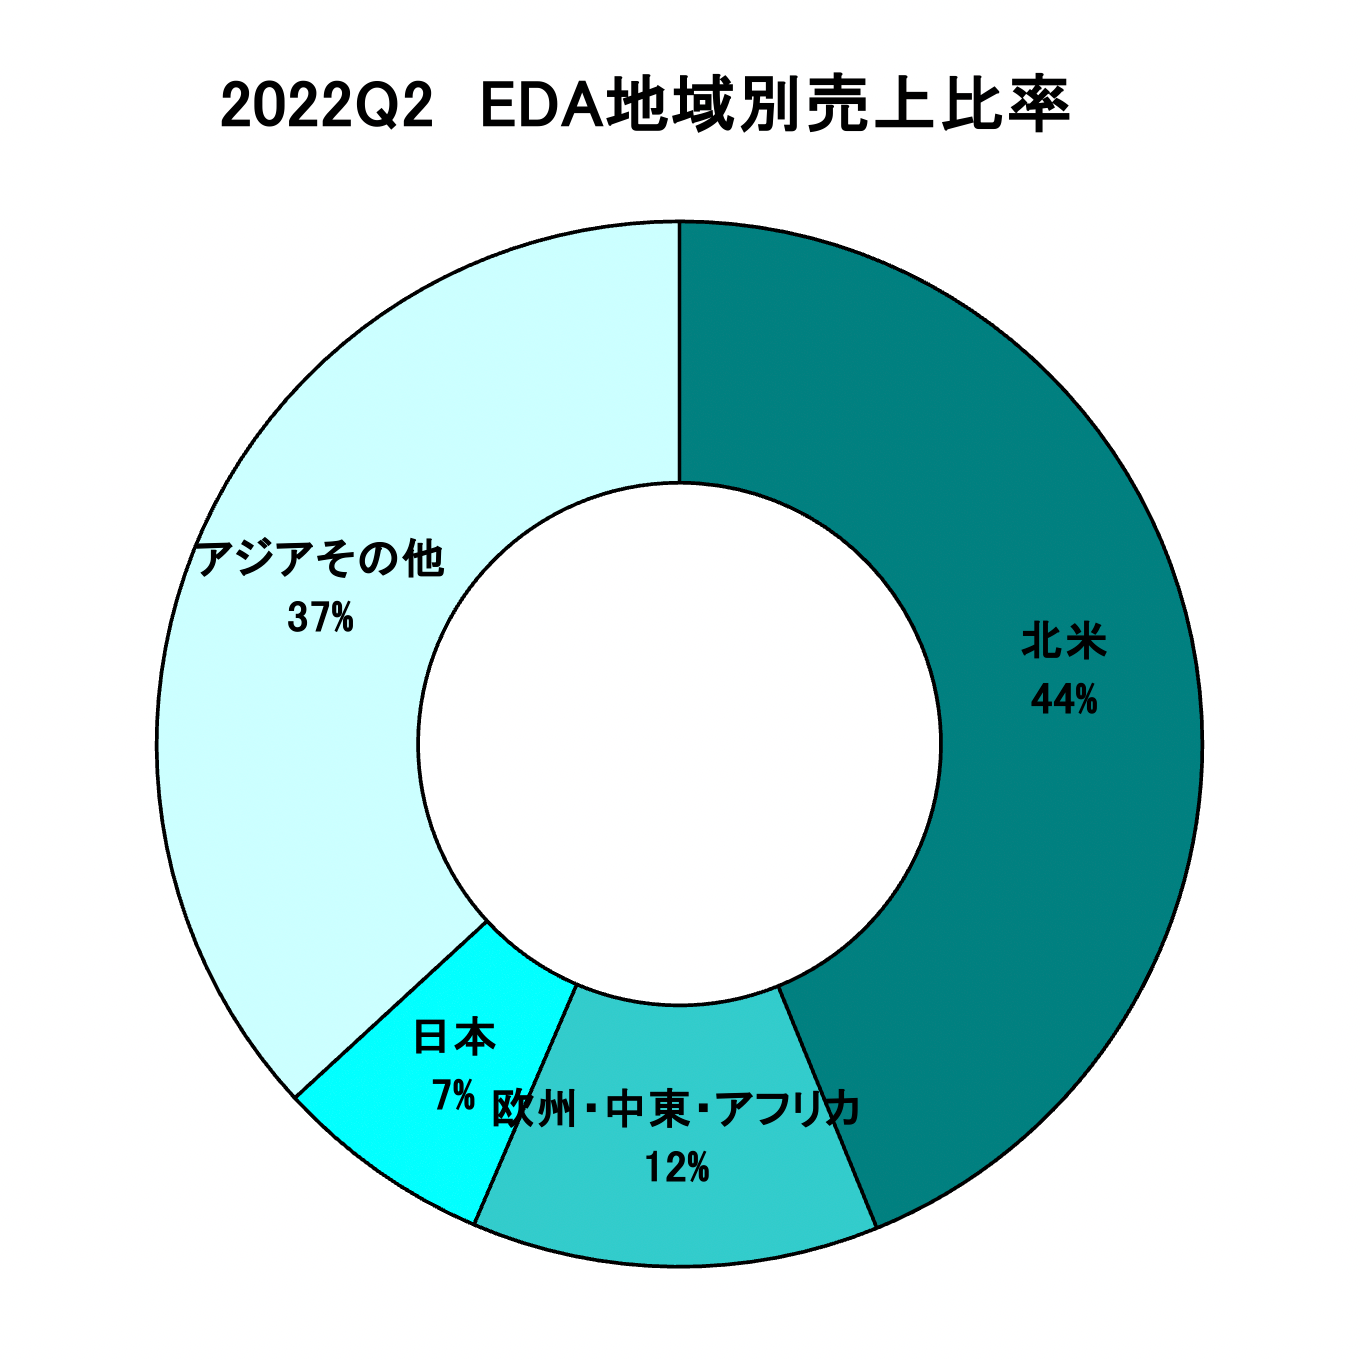 https://www.eda-express.com/%E3%82%B9%E3%82%AF%E3%83%AA%E3%83%BC%E3%83%B3%E3%82%B7%E3%83%A7%E3%83%83%E3%83%88%202022-10-18%206.52.19.png